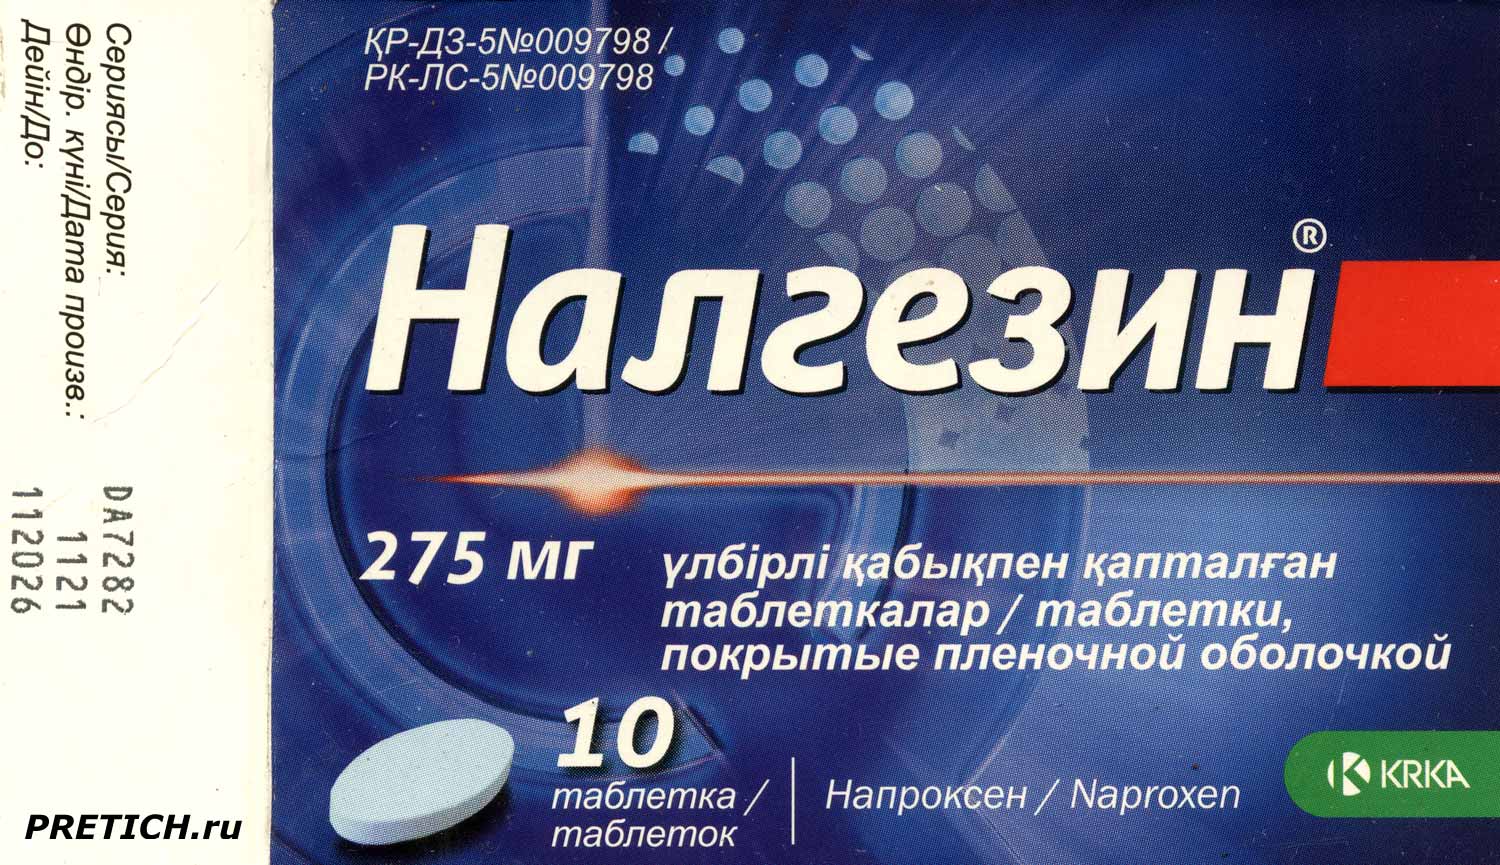 Налгезин они же Напроксен или Naproxen обзор обезболивающих таблеток